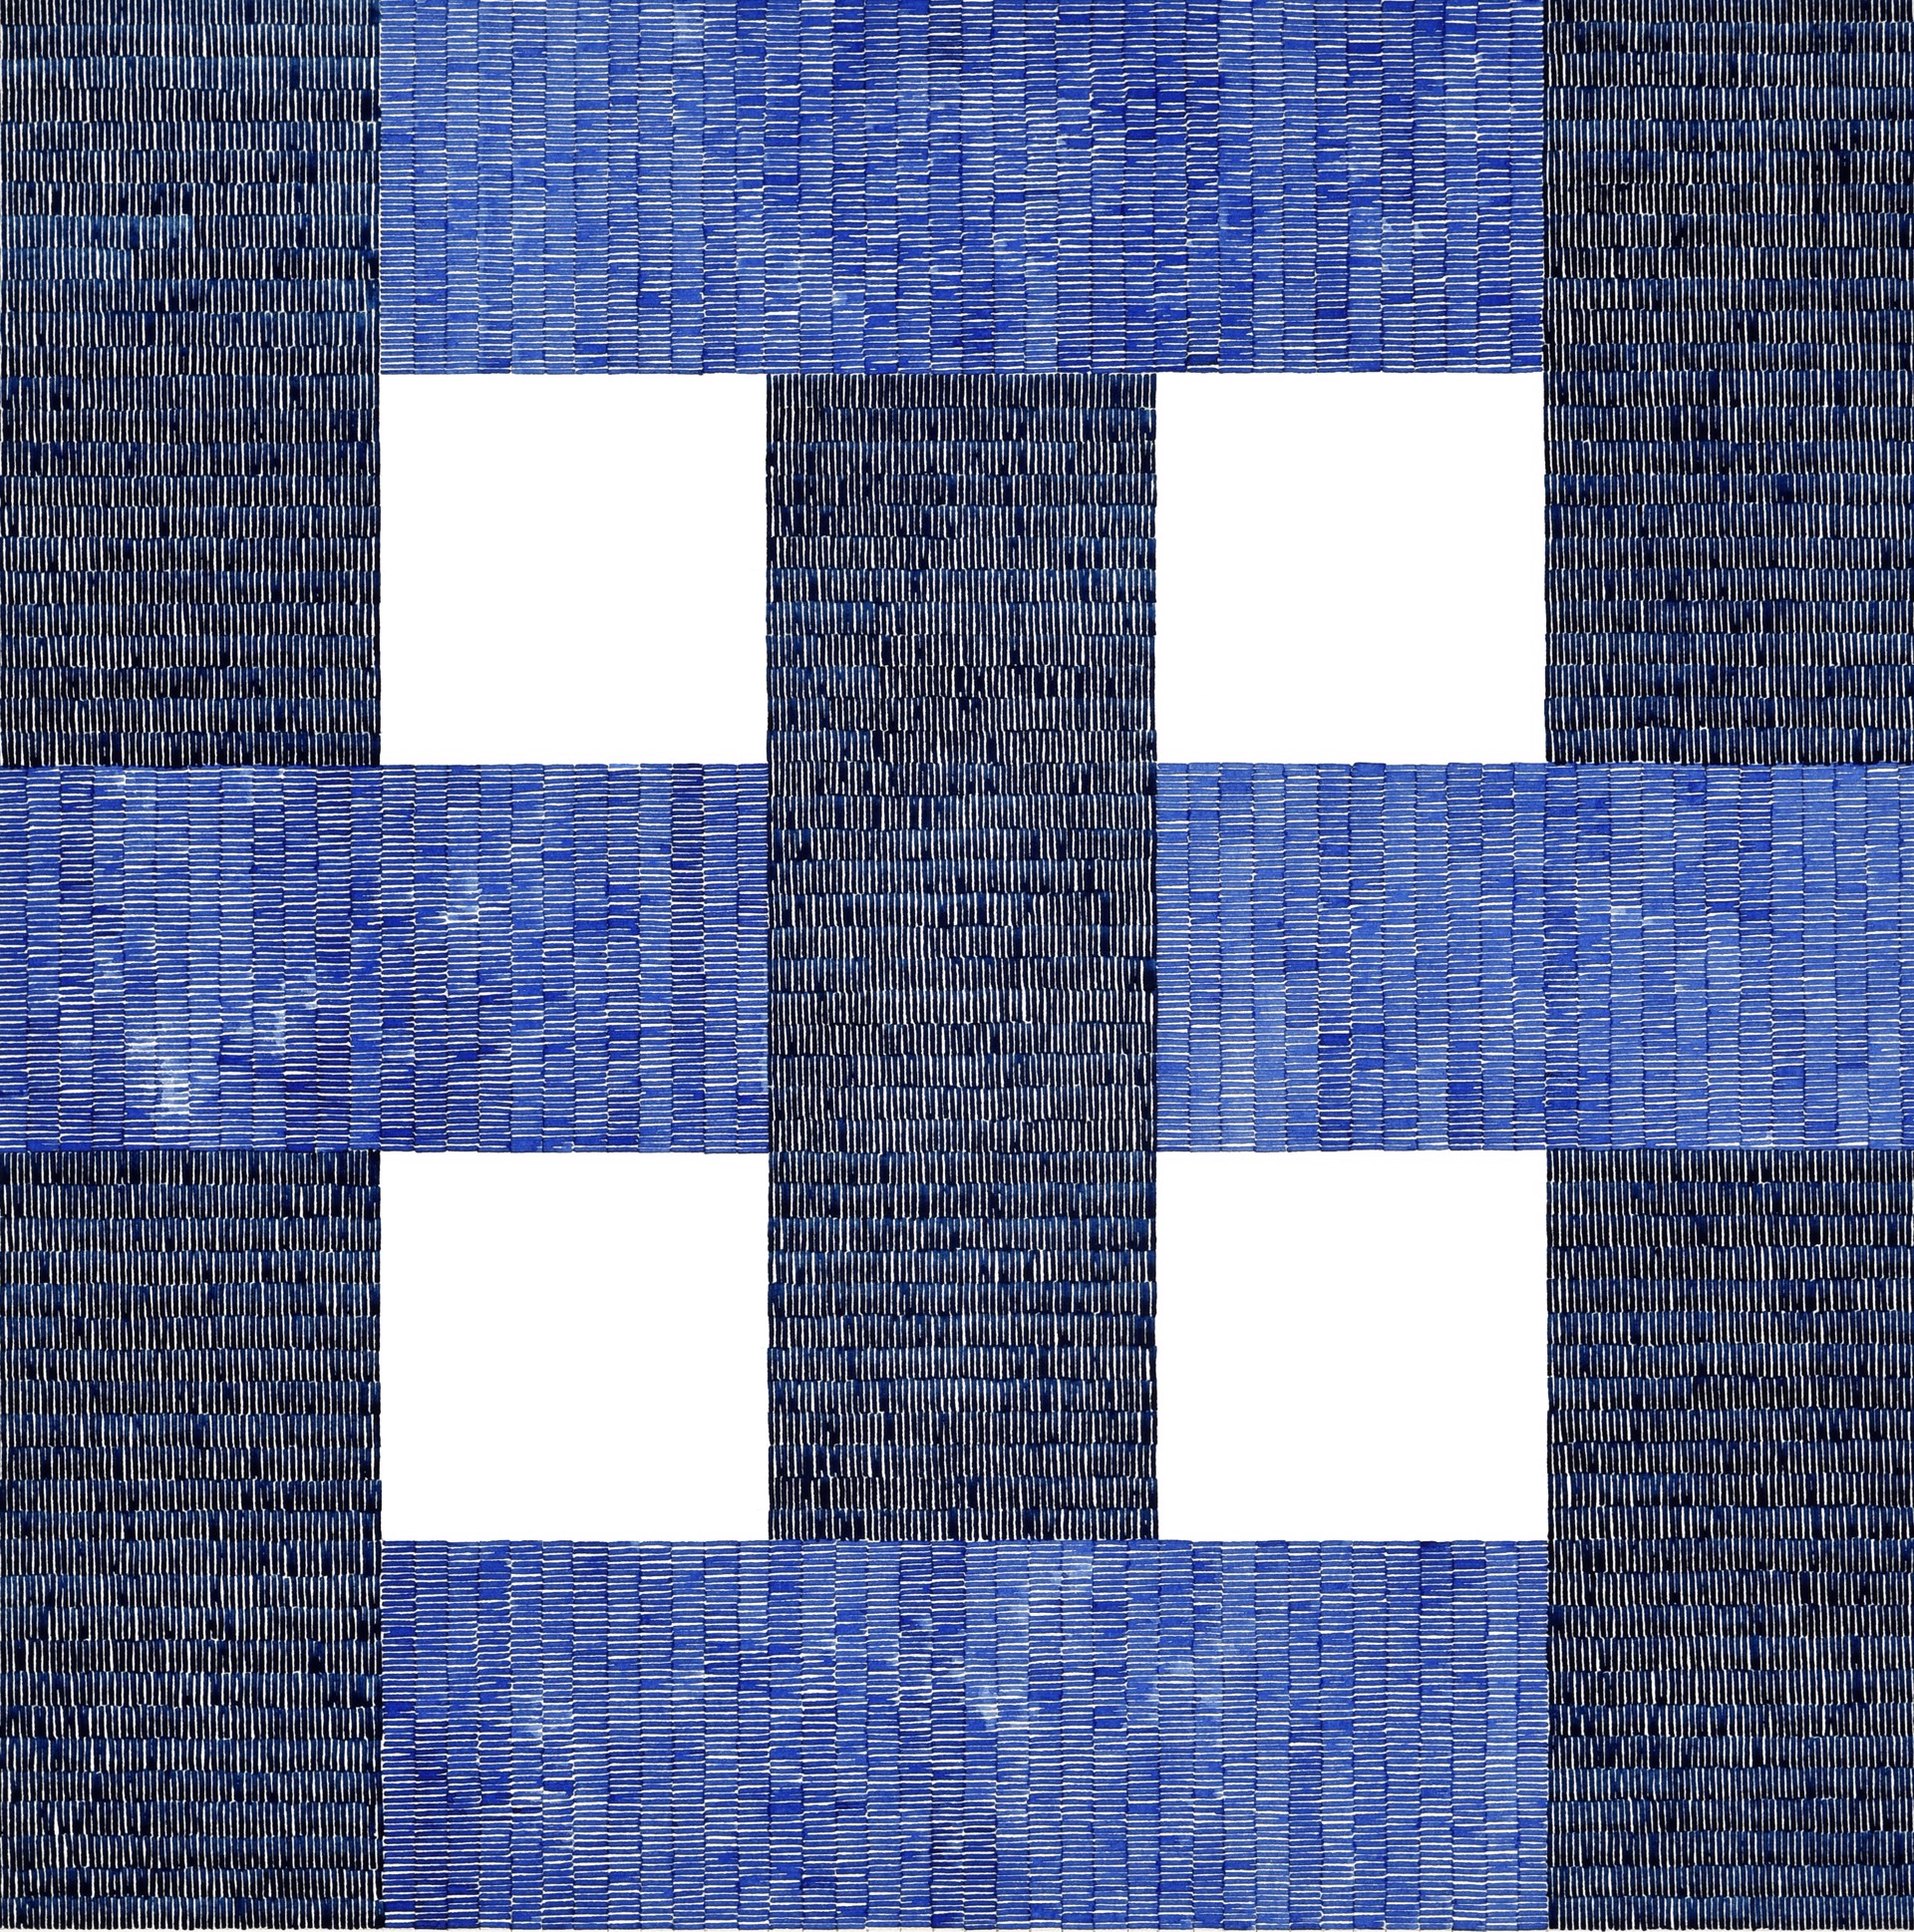 Blue Grid by Robert Lansden